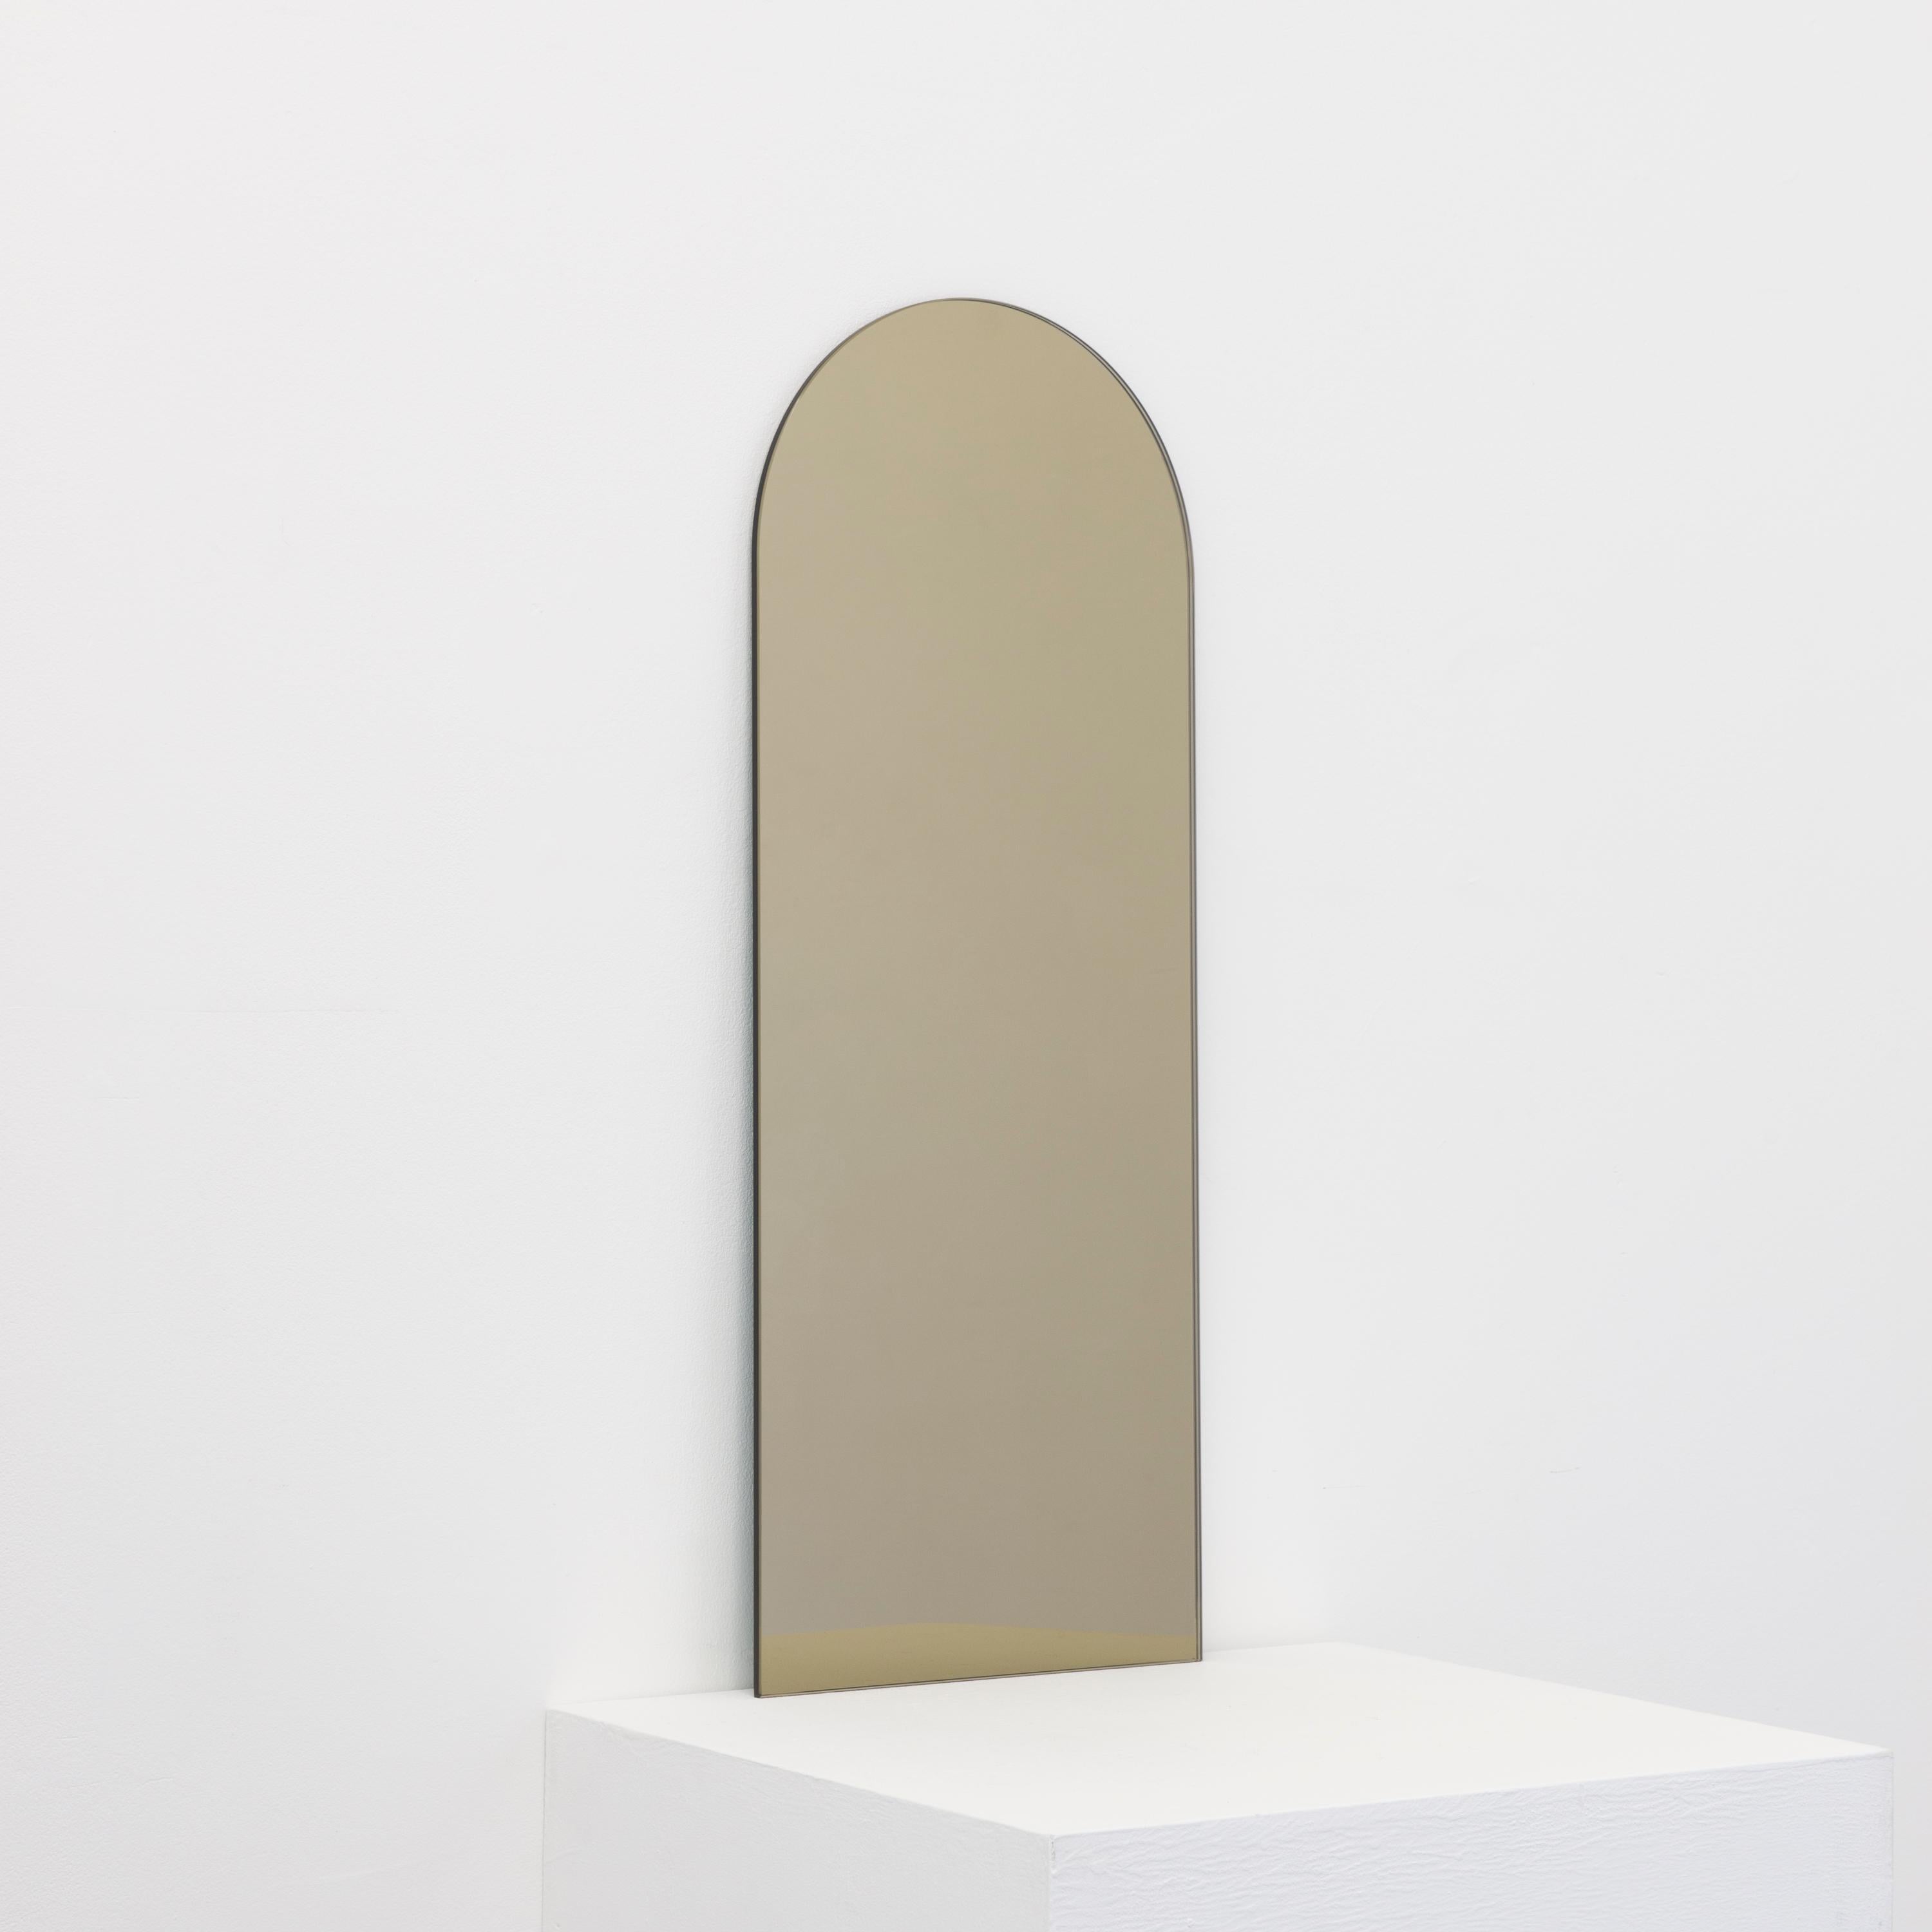 Miroir teinté bronze sans cadre en forme d'arc minimaliste avec un effet flottant. Un design de qualité qui garantit que le miroir est parfaitement parallèle au mur. Conçu et fabriqué à Londres, au Royaume-Uni.

Equipé de plaques professionnelles